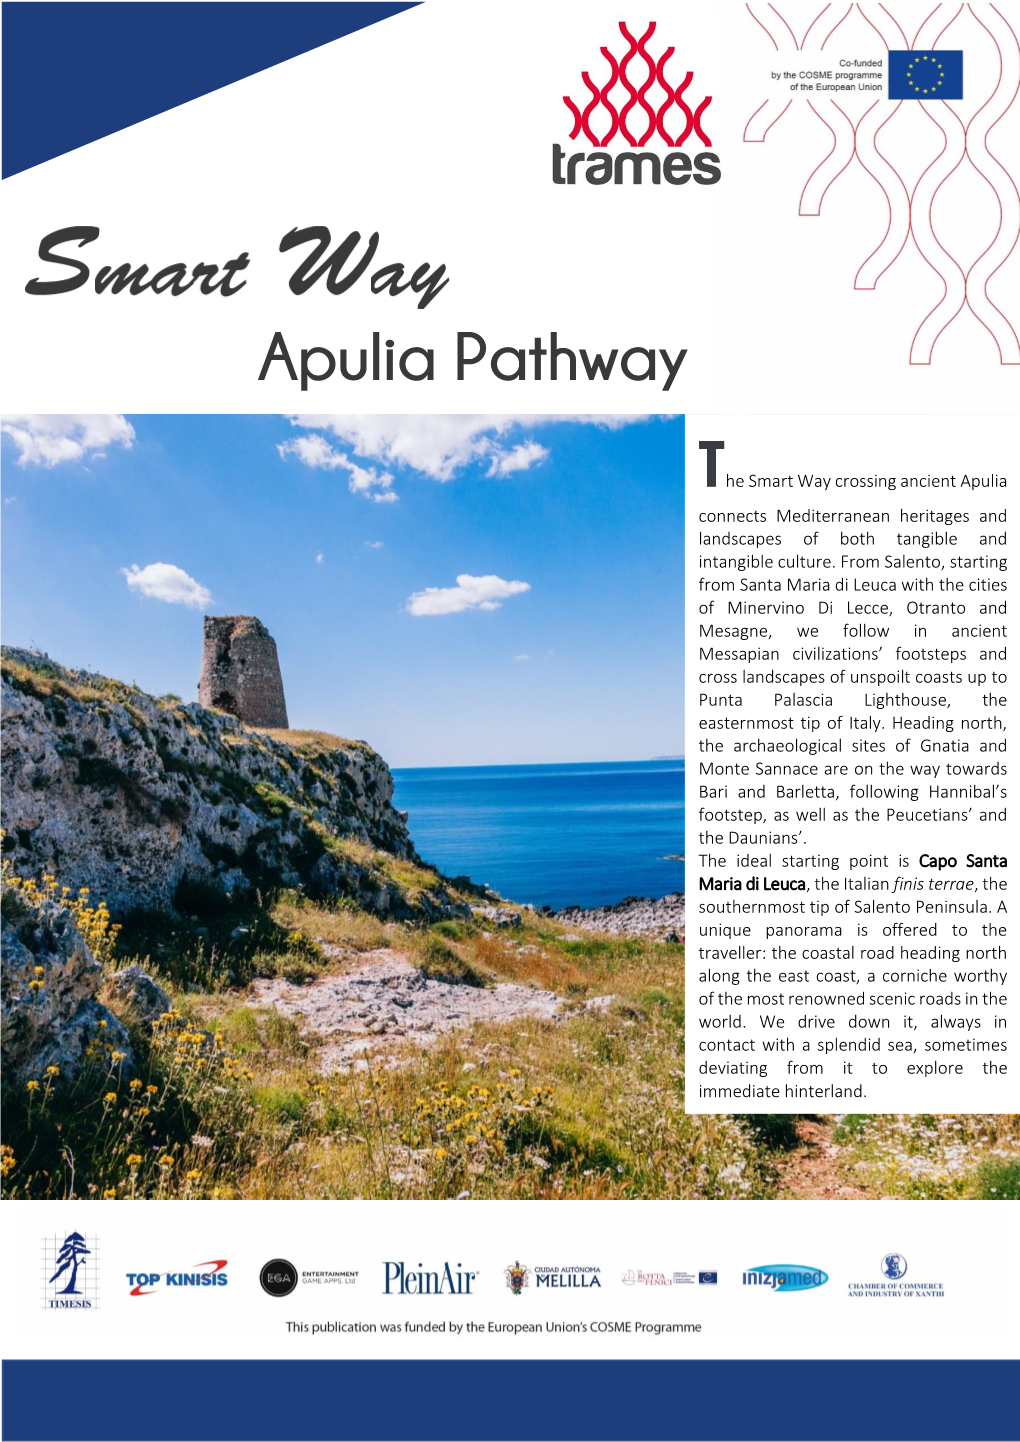 Apulia Pathway